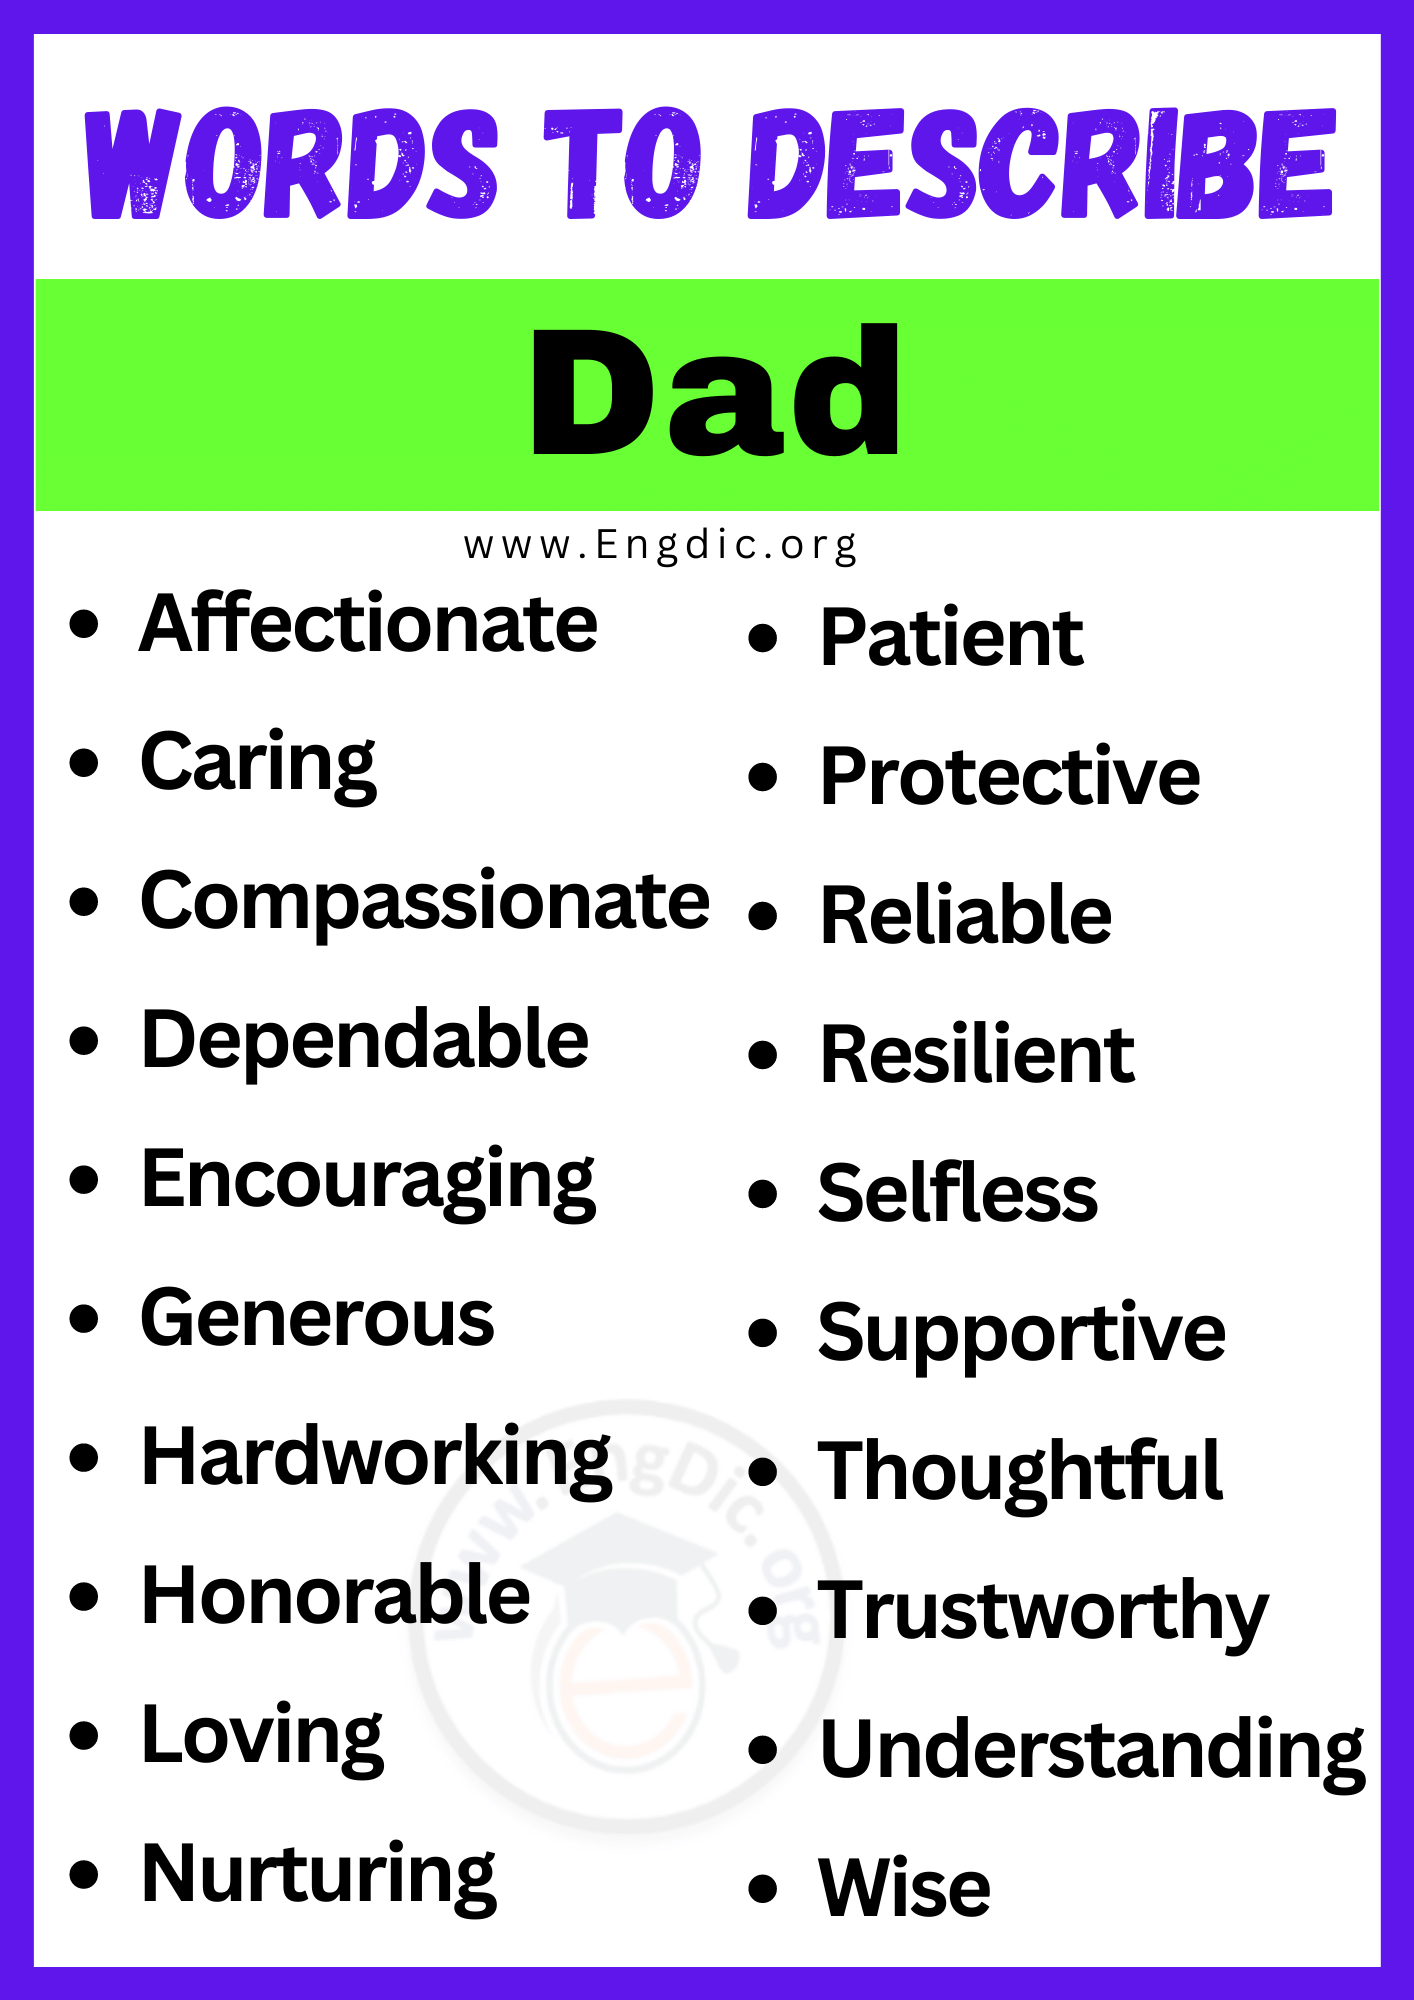 Words to Describe Dad